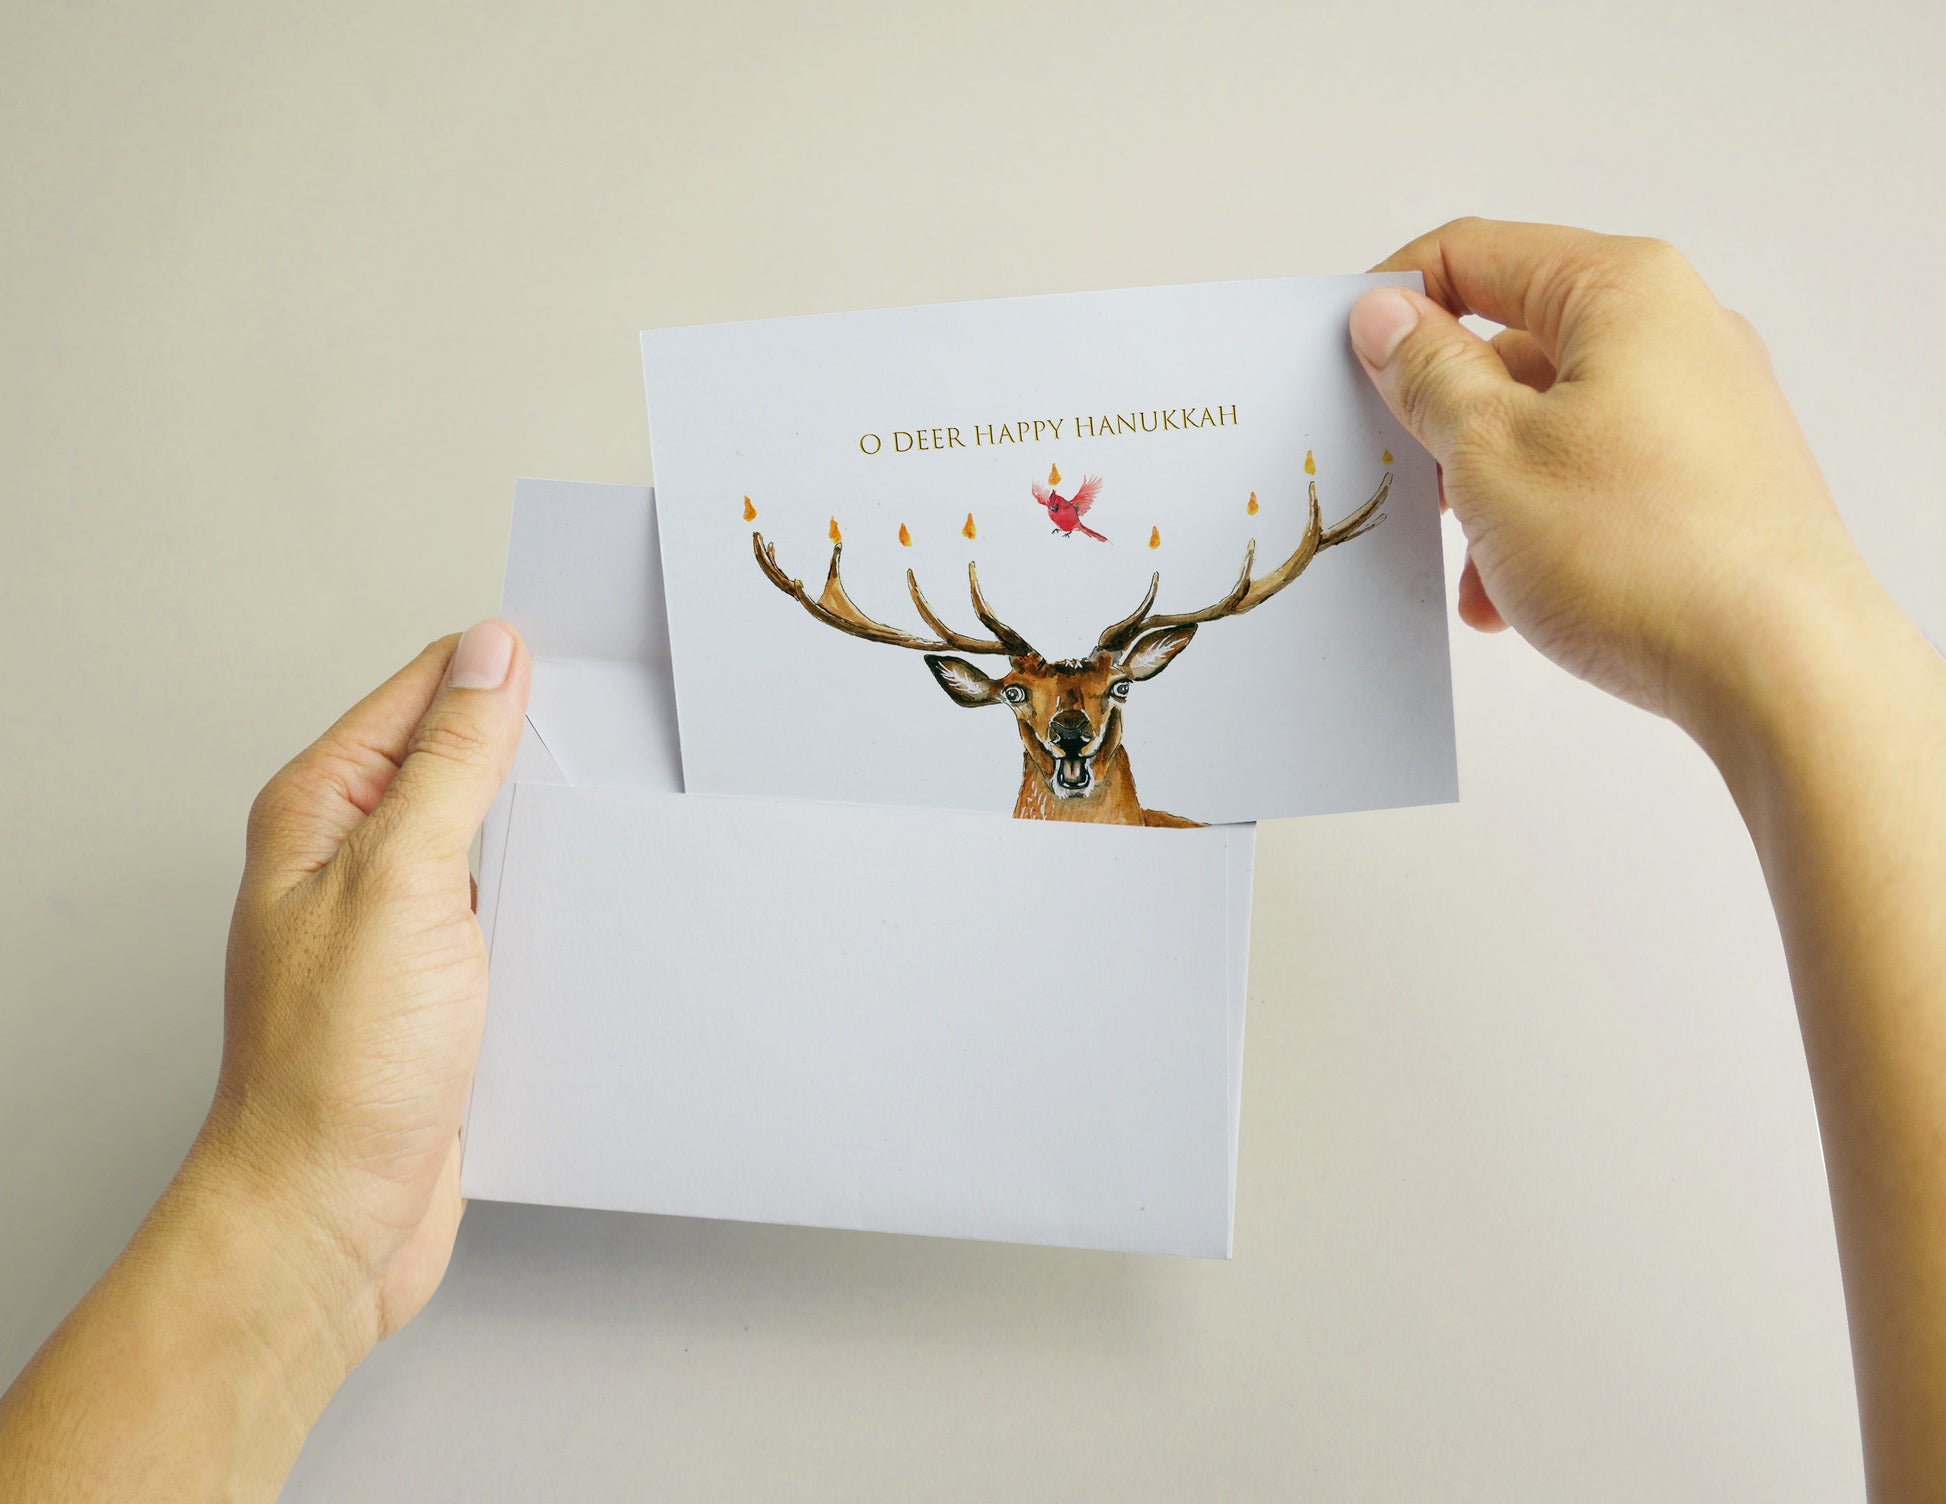 Funny Hanukkah Card - Cardinal Oh Deer Menorah Candles